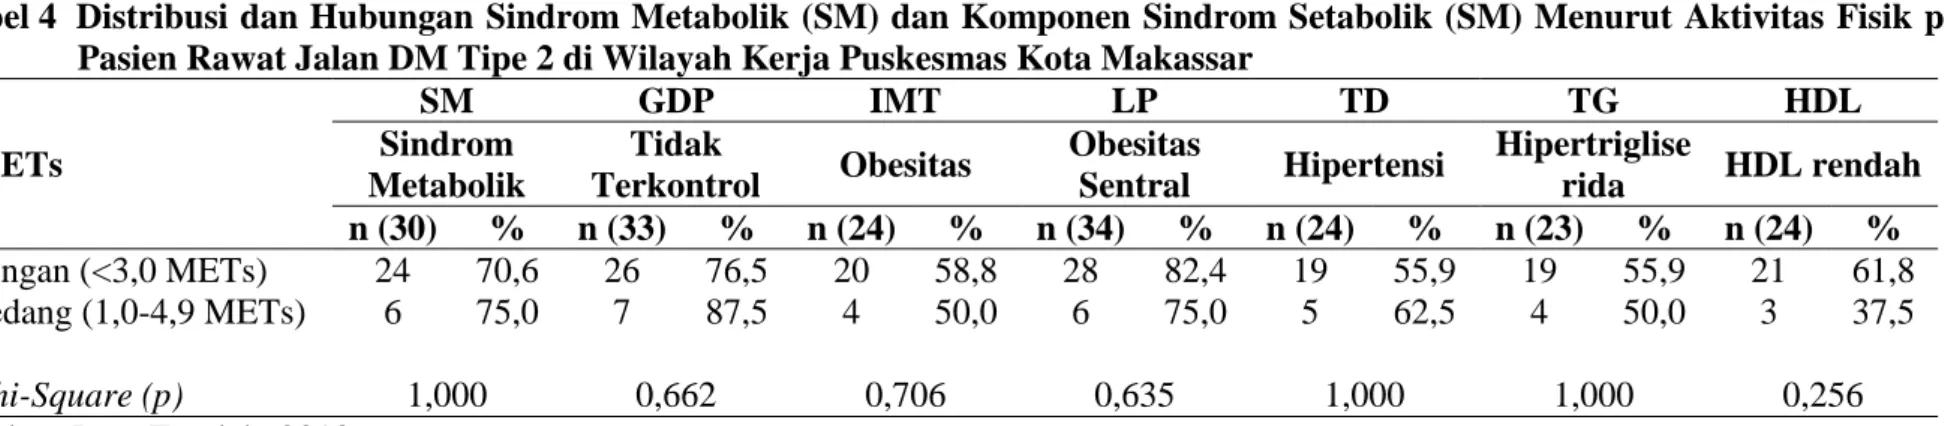 Tabel 4  Distribusi dan Hubungan  Sindrom Metabolik (SM) dan Komponen Sindrom Setabolik (SM) Menurut Aktivitas Fisik pada  Pasien Rawat Jalan DM Tipe 2 di Wilayah Kerja Puskesmas Kota Makassar  